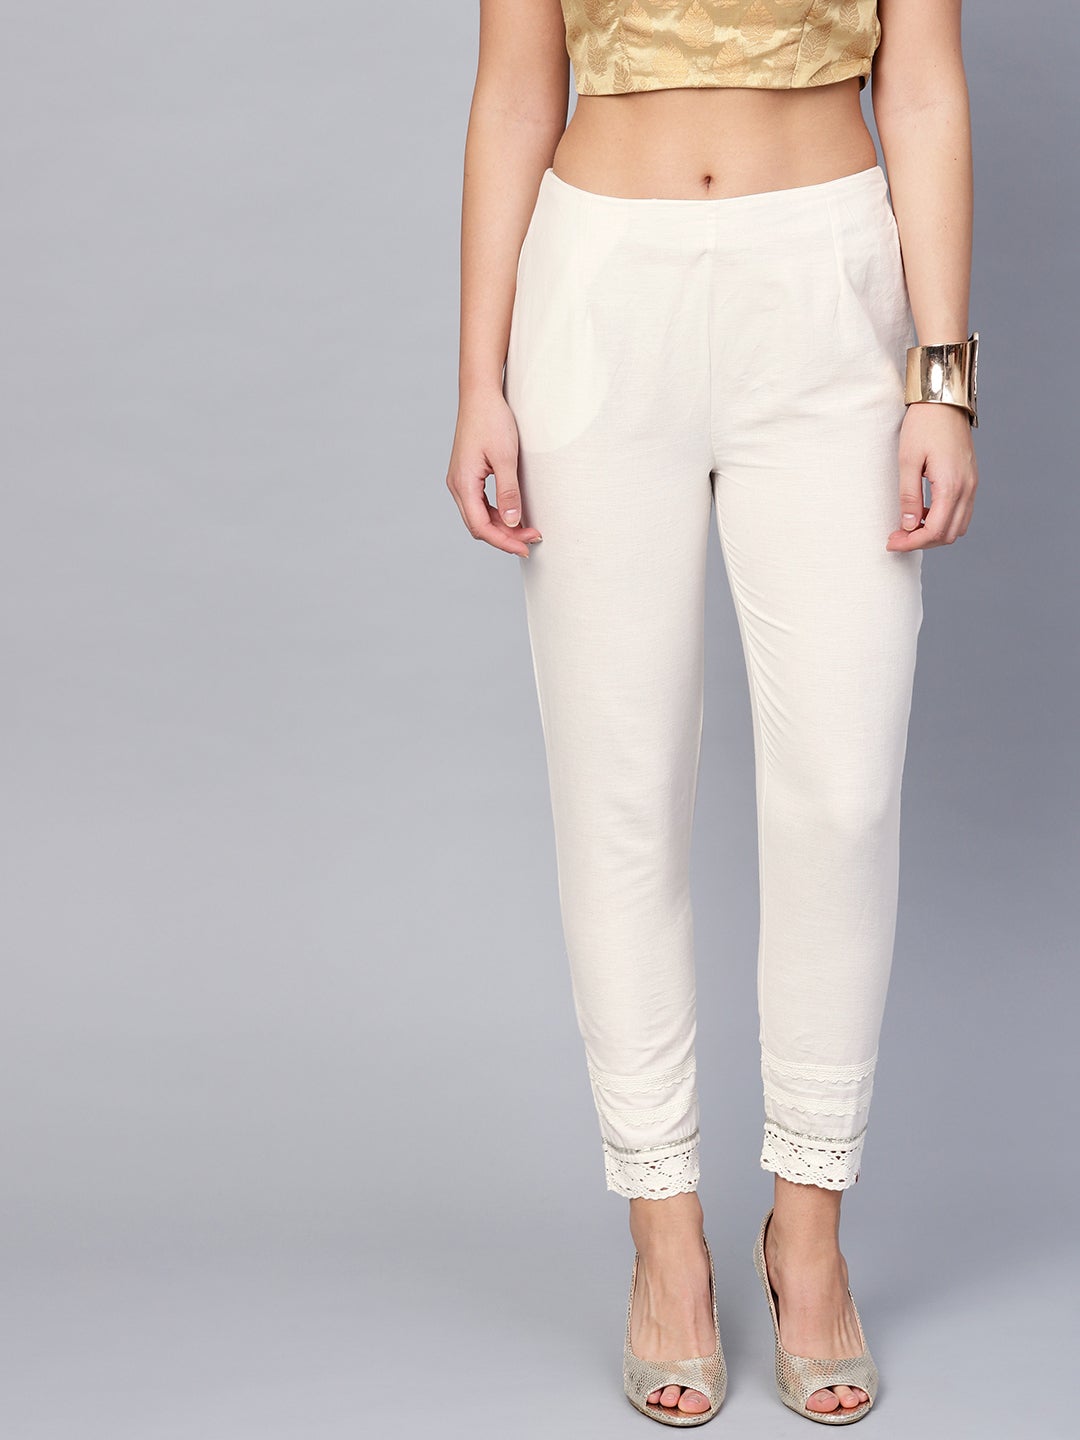 White Cotton Flex Solid Slim Fit Pant/Slim Pant